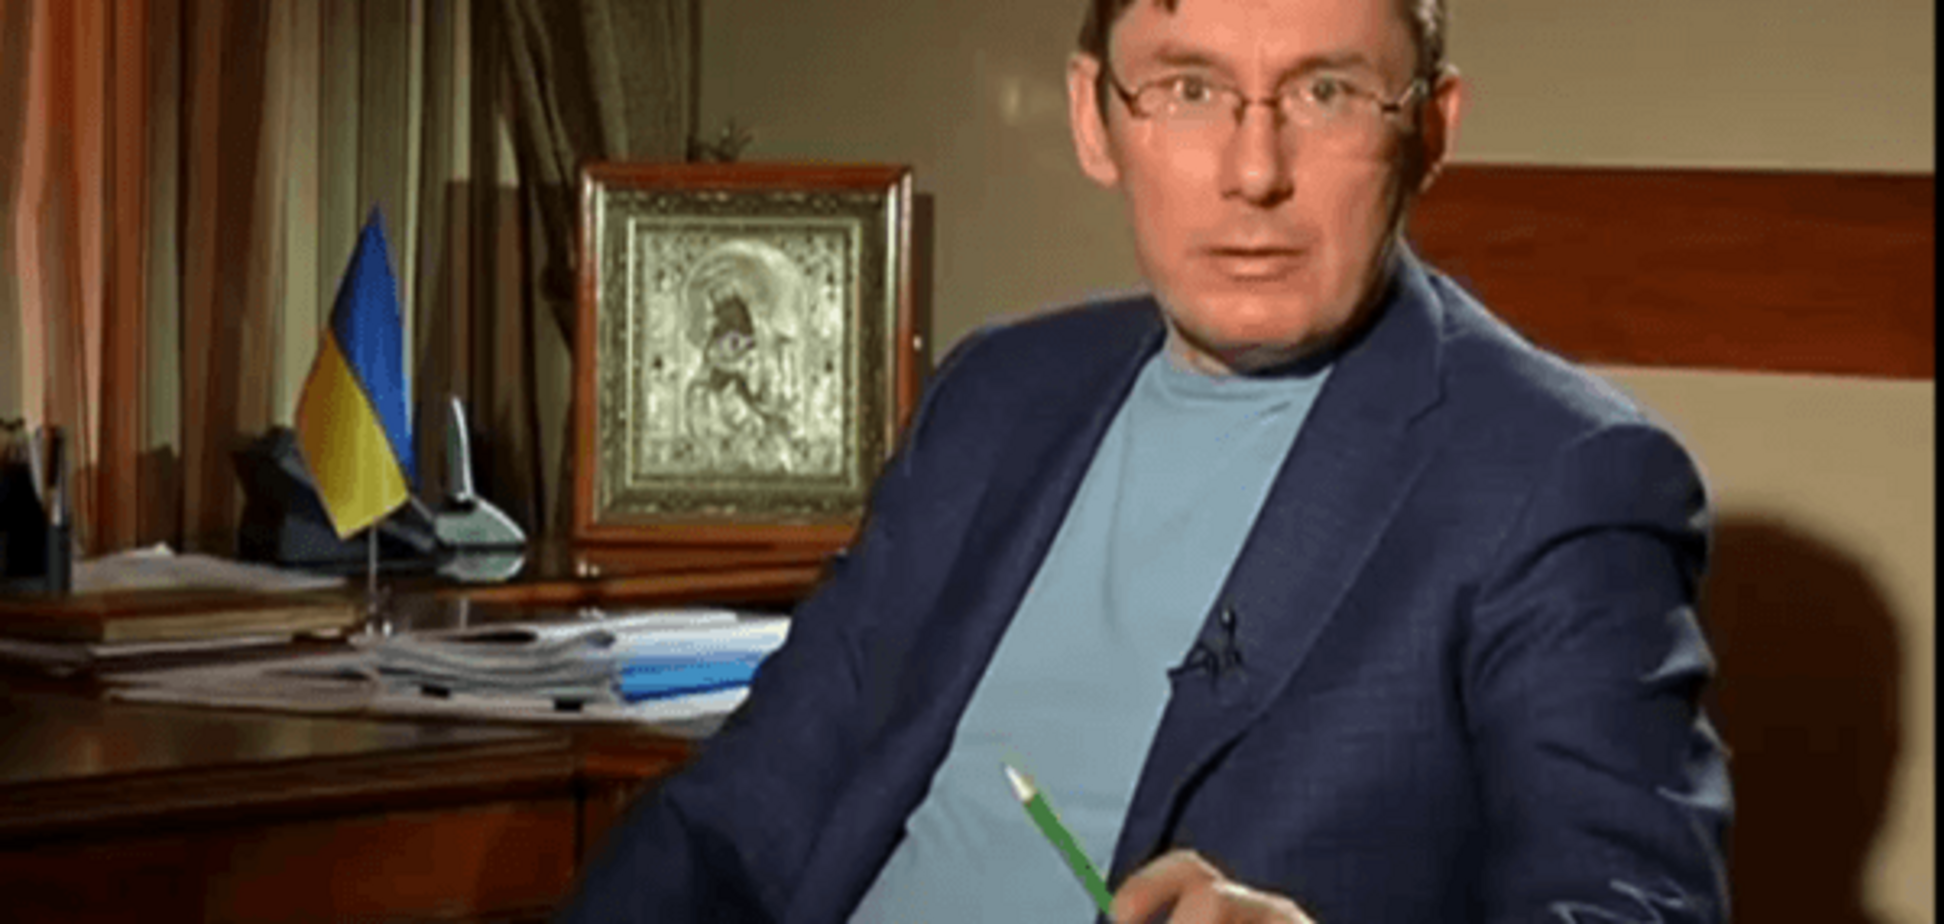 Нардепам розіслали фейкові подяки 'від генпрокурора Луценка'